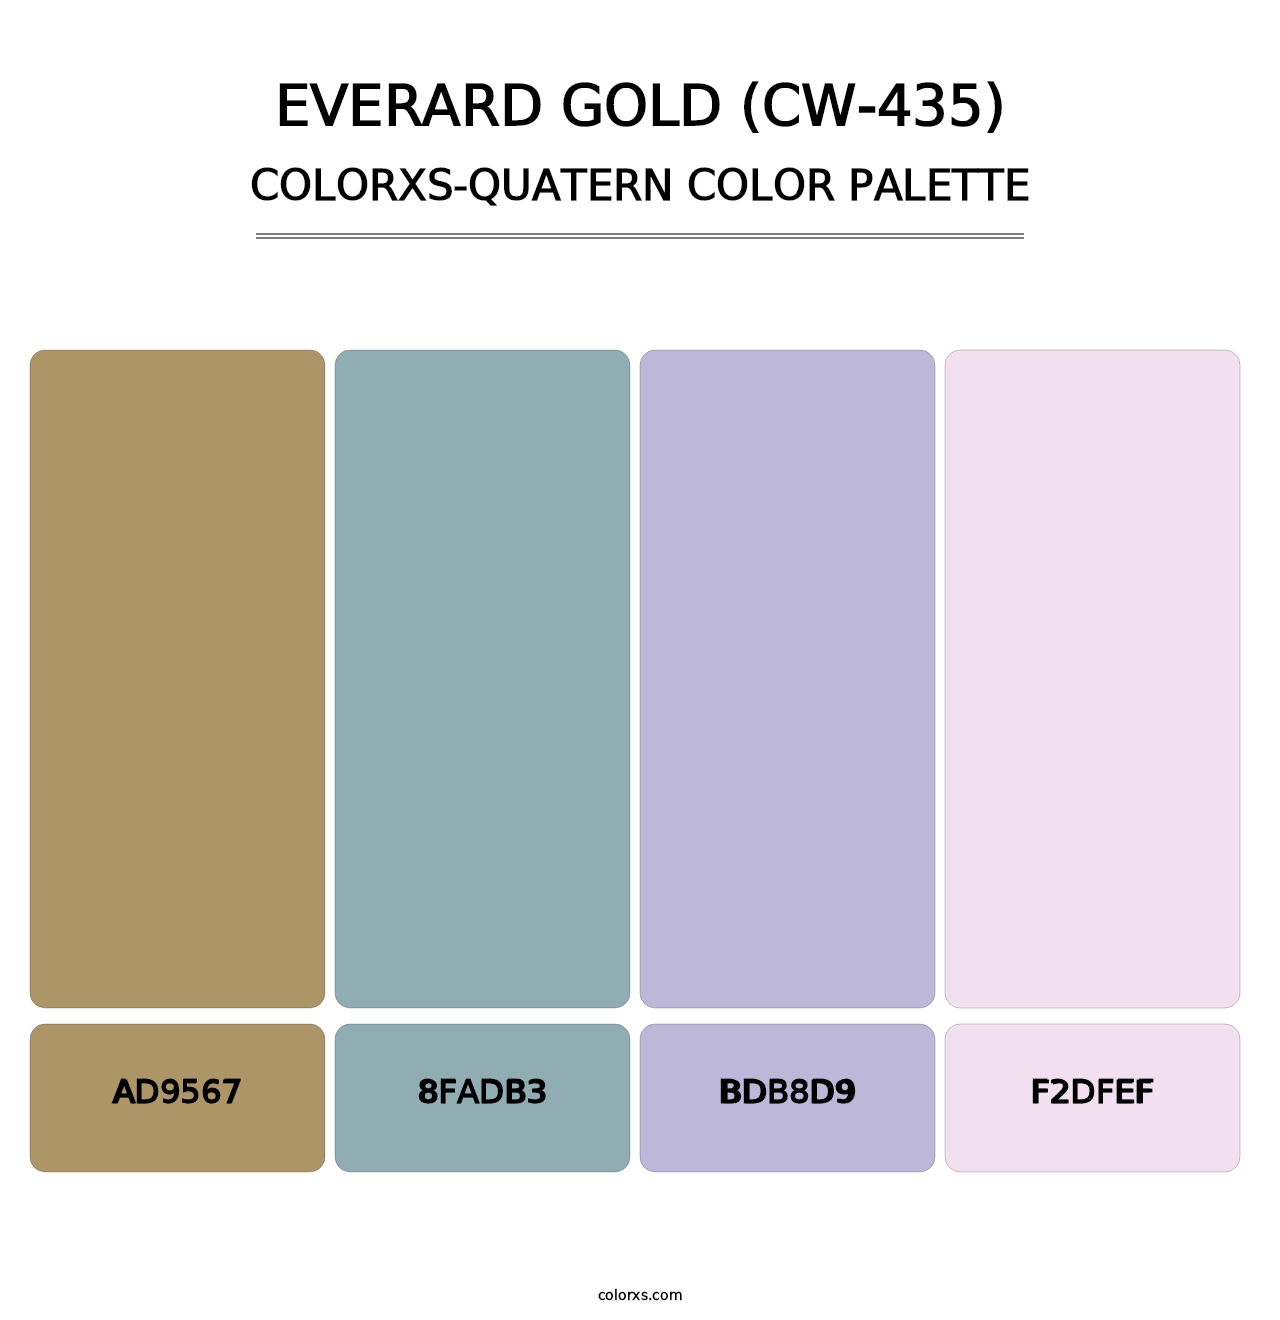 Everard Gold (CW-435) - Colorxs Quatern Palette